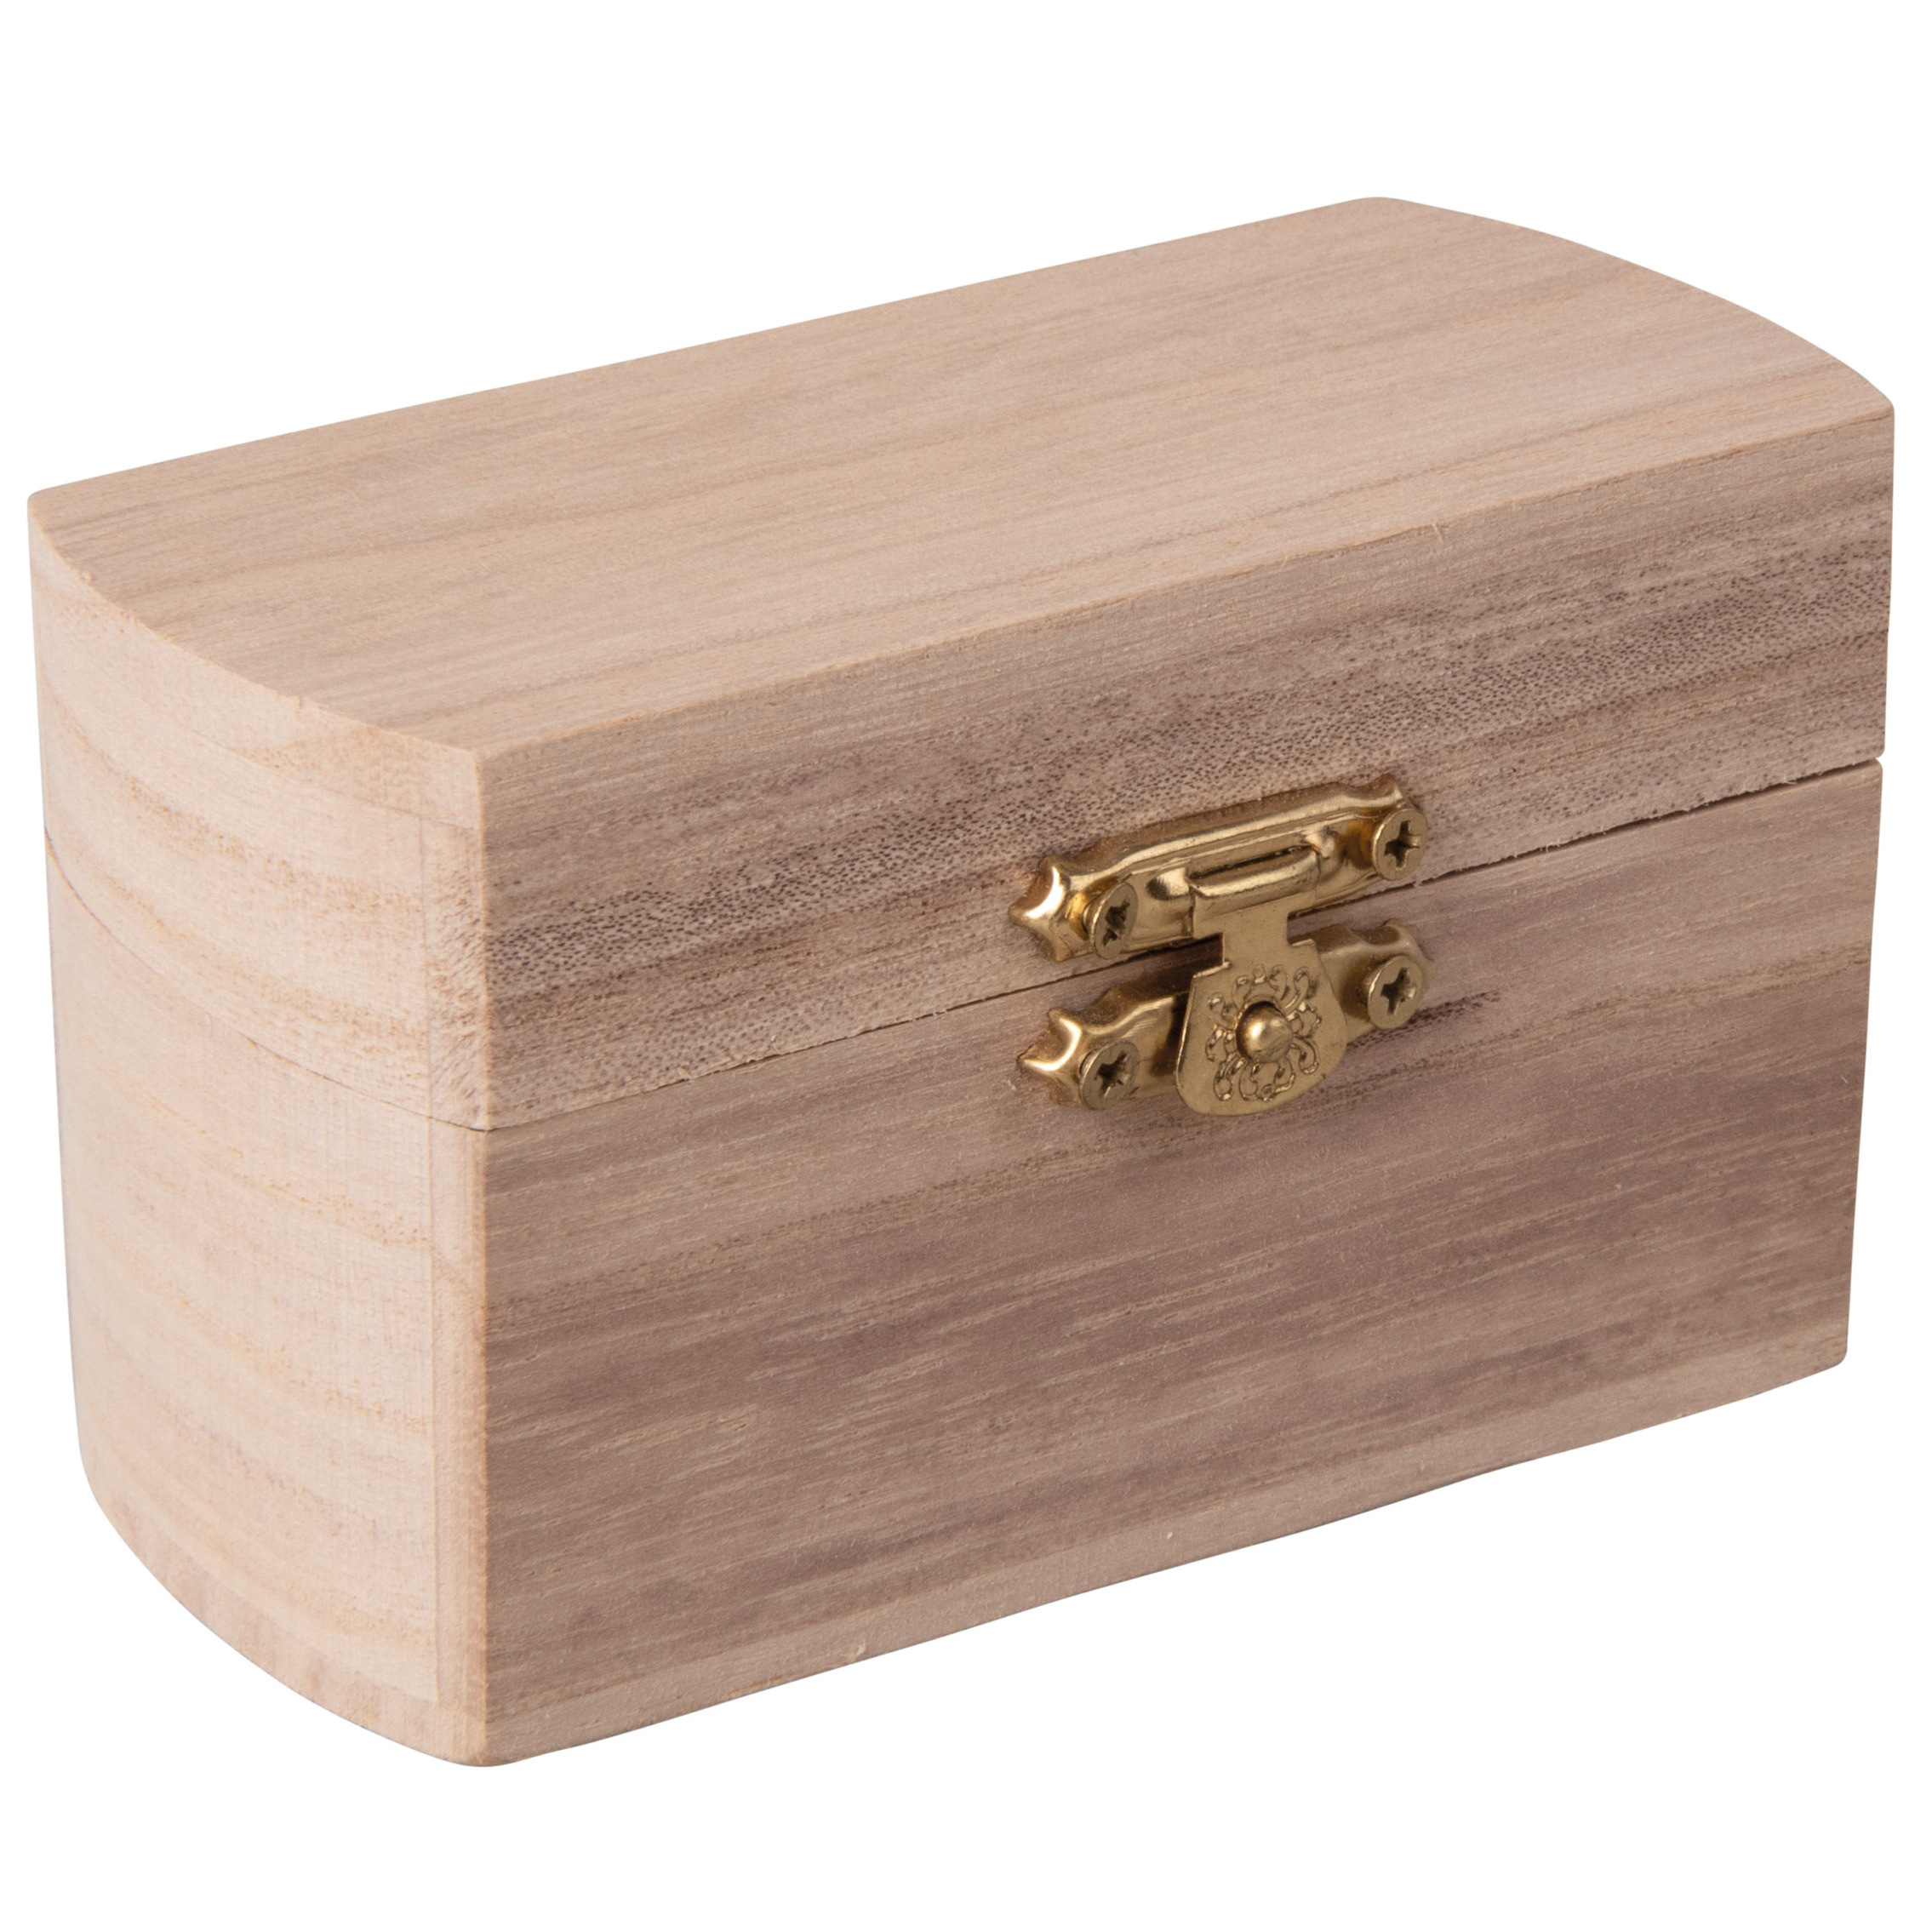 Klein houten kistje met sluiting en deksel 10 x 6 x 6 cm Sieraden-spulletjes-sleutels